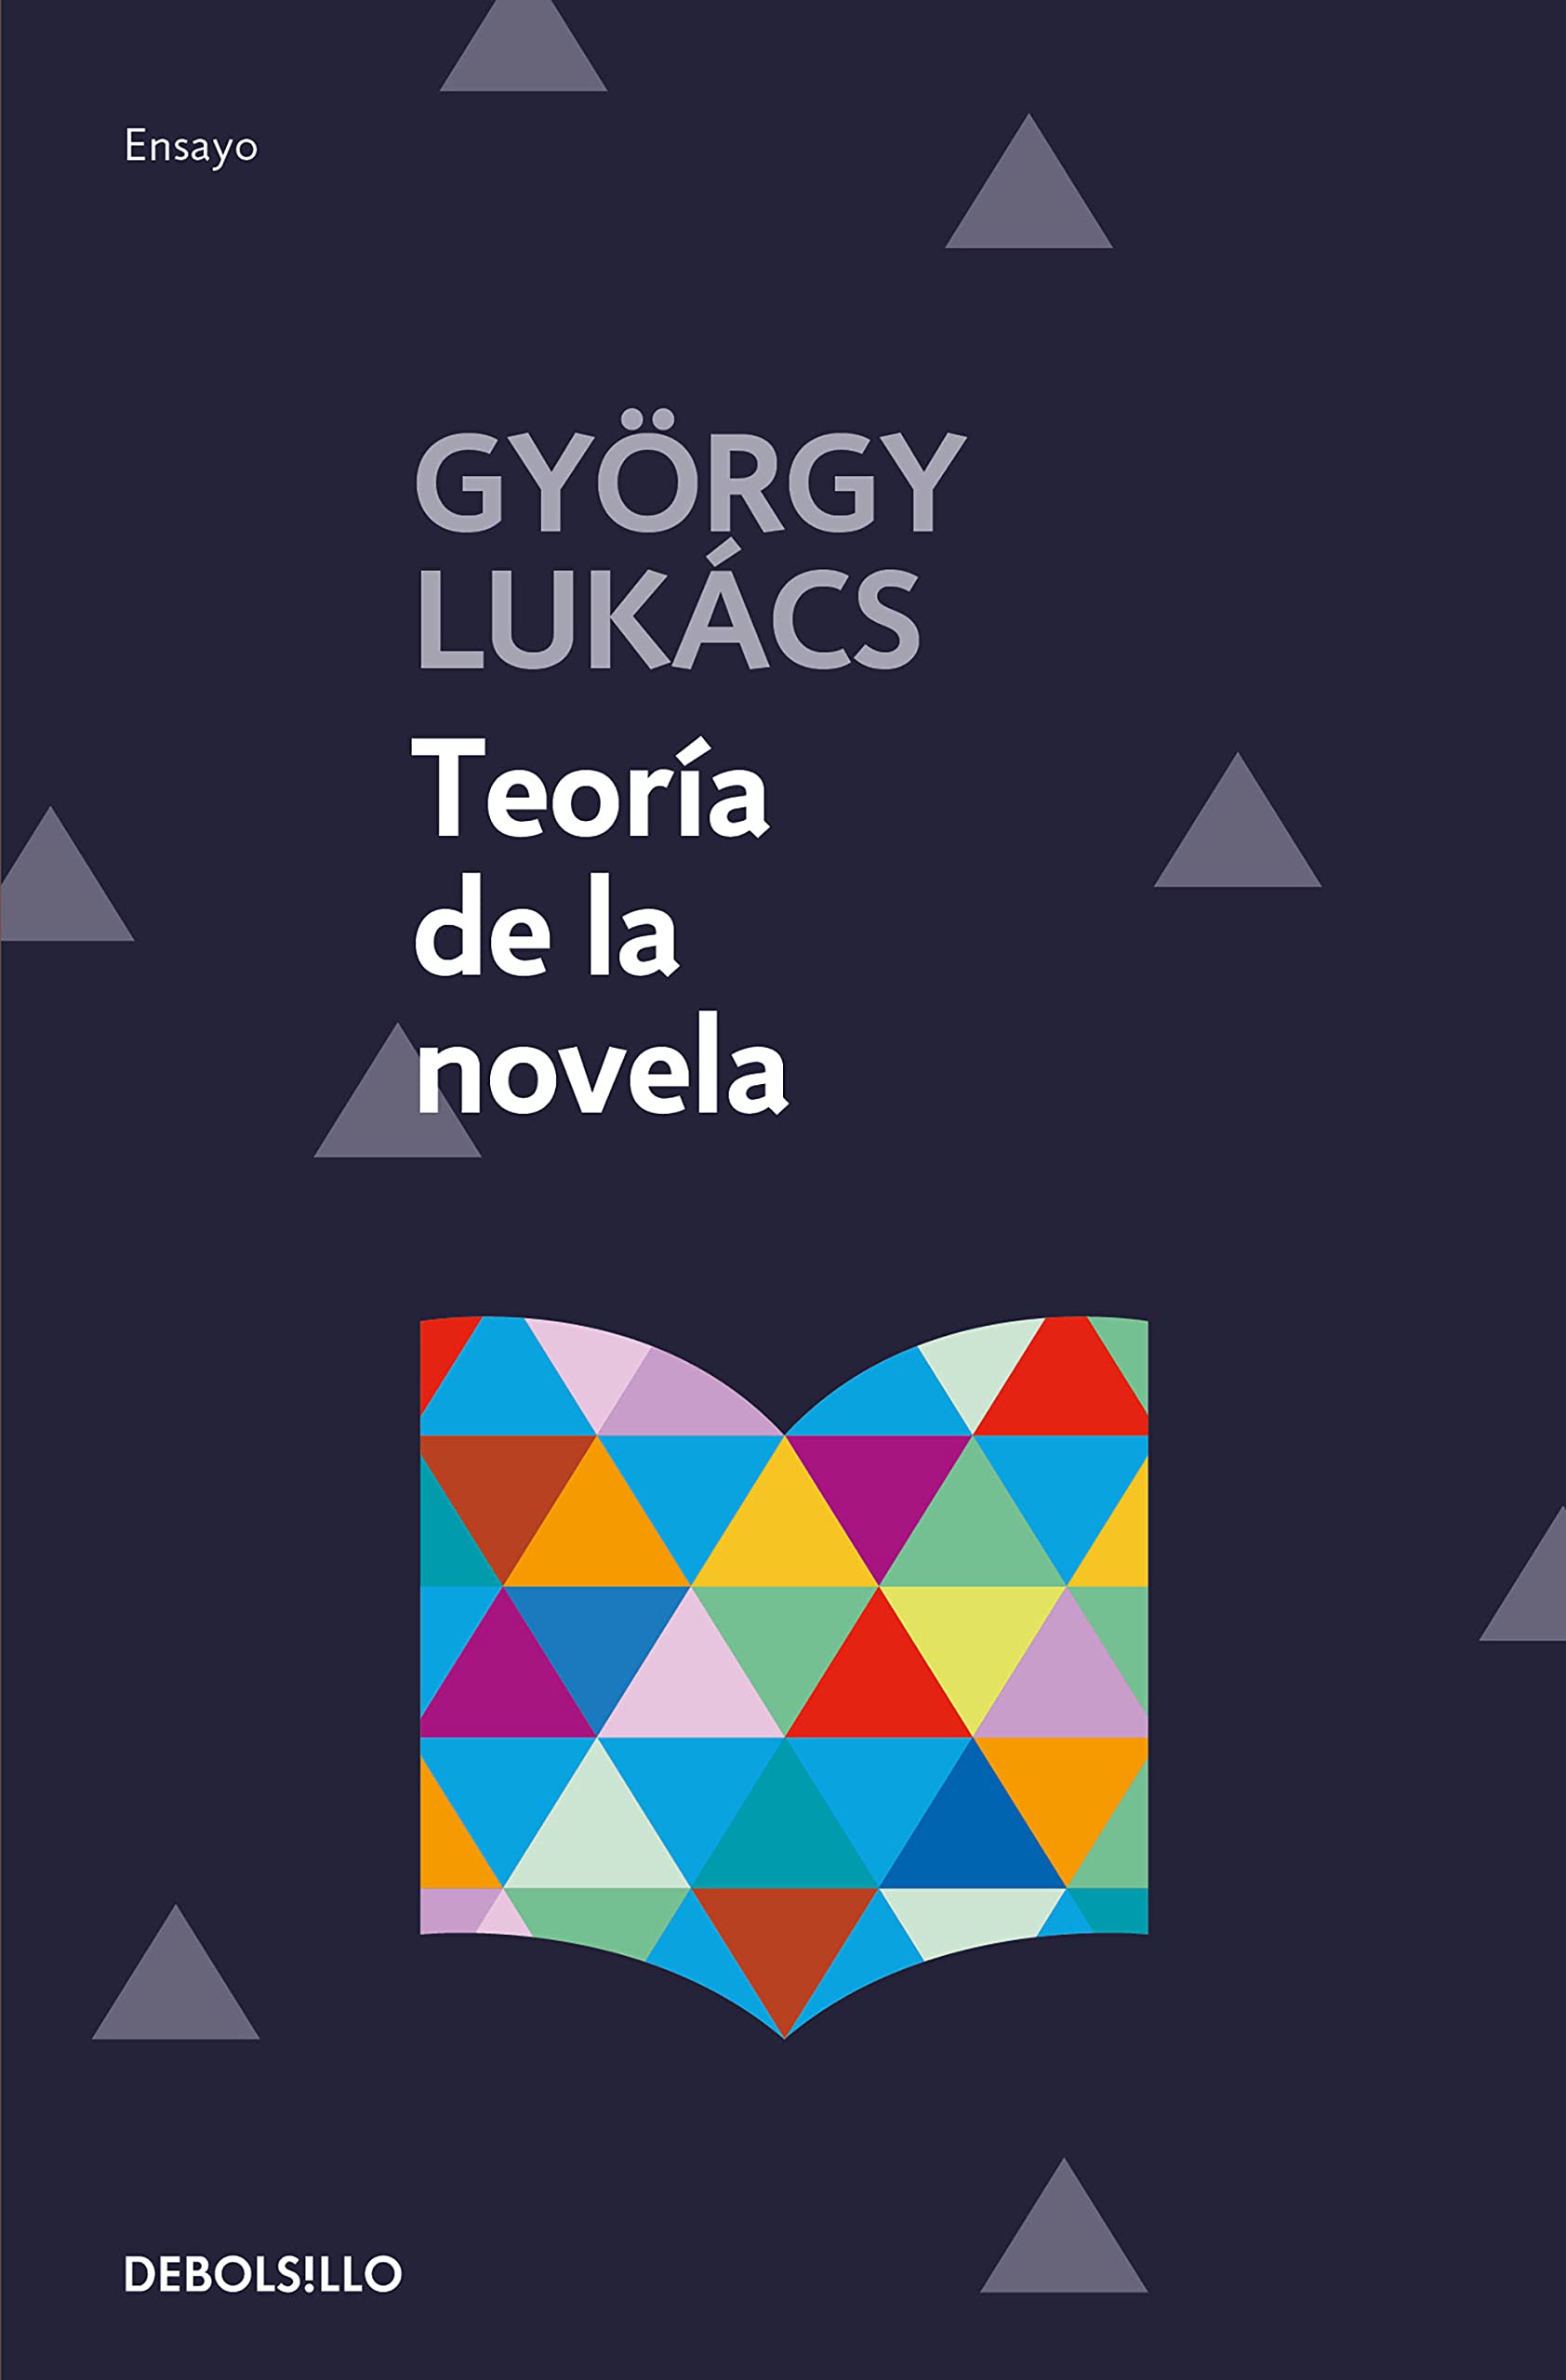 Zenda recomienda: Teoría de la novela, de György Lukács